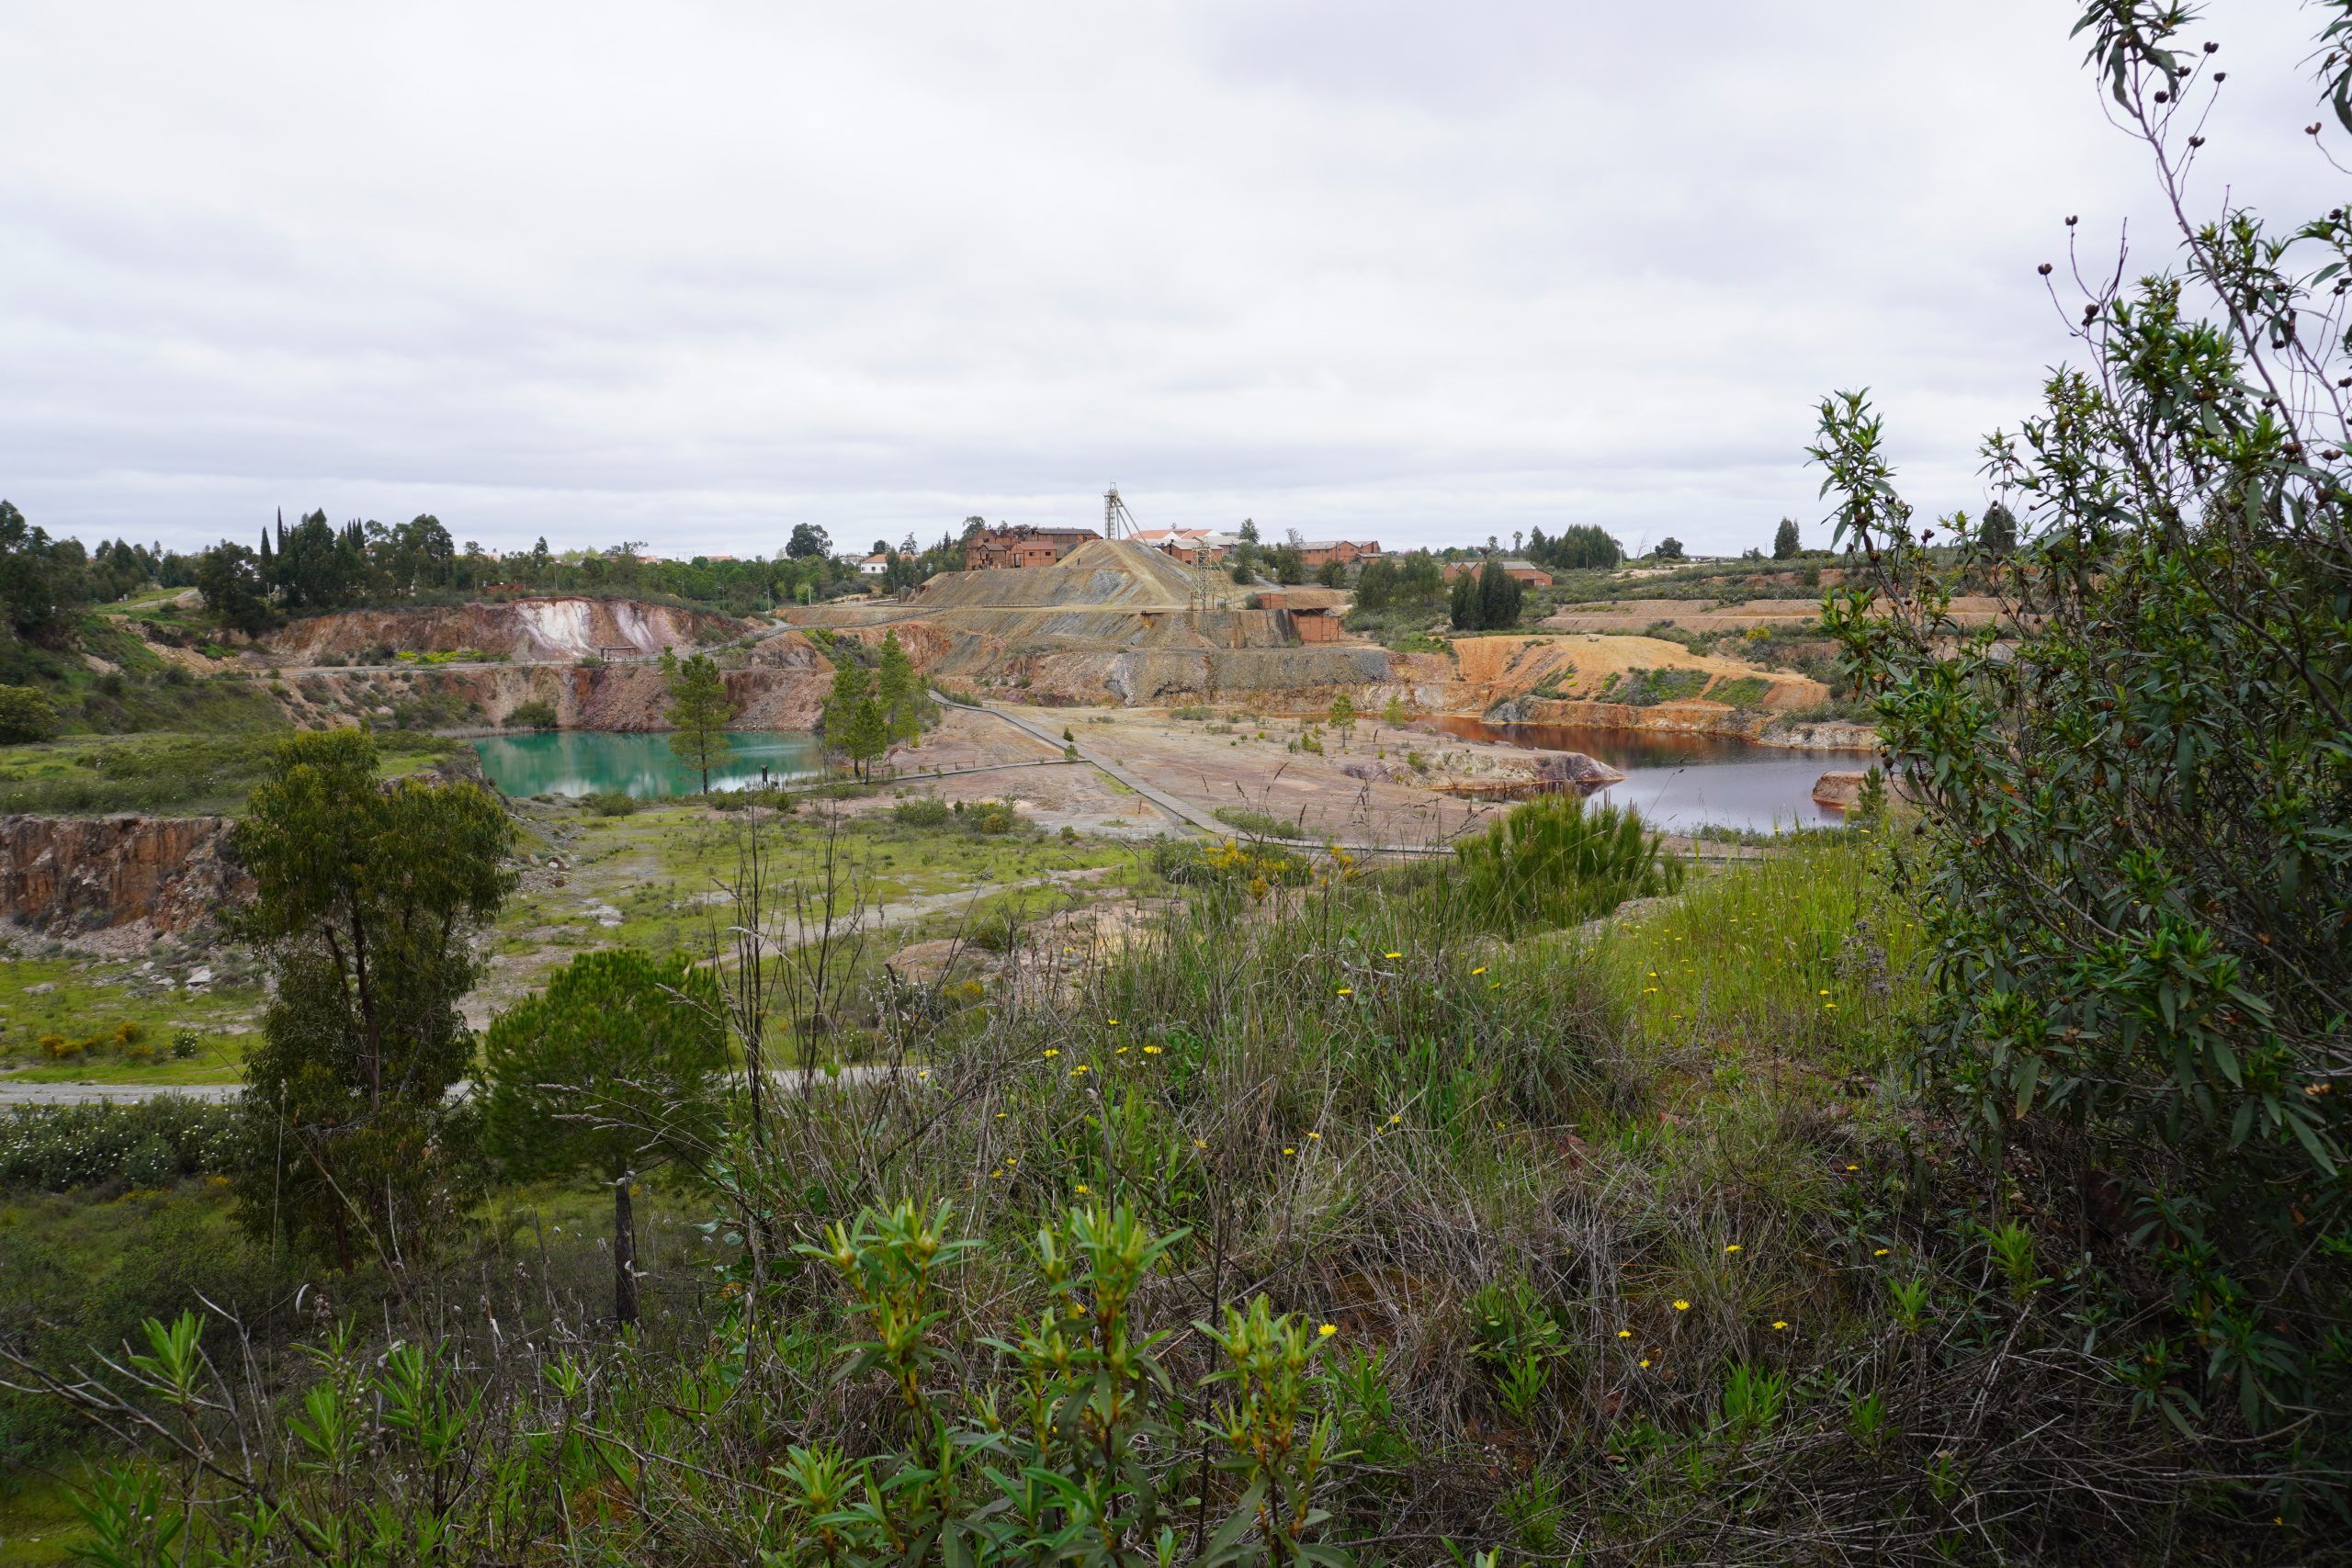 Life Ribermine com “Pernas Pr’Andar!” na semana do roteiro de minas e pontos de interesse mineiro e geológico de Portugal